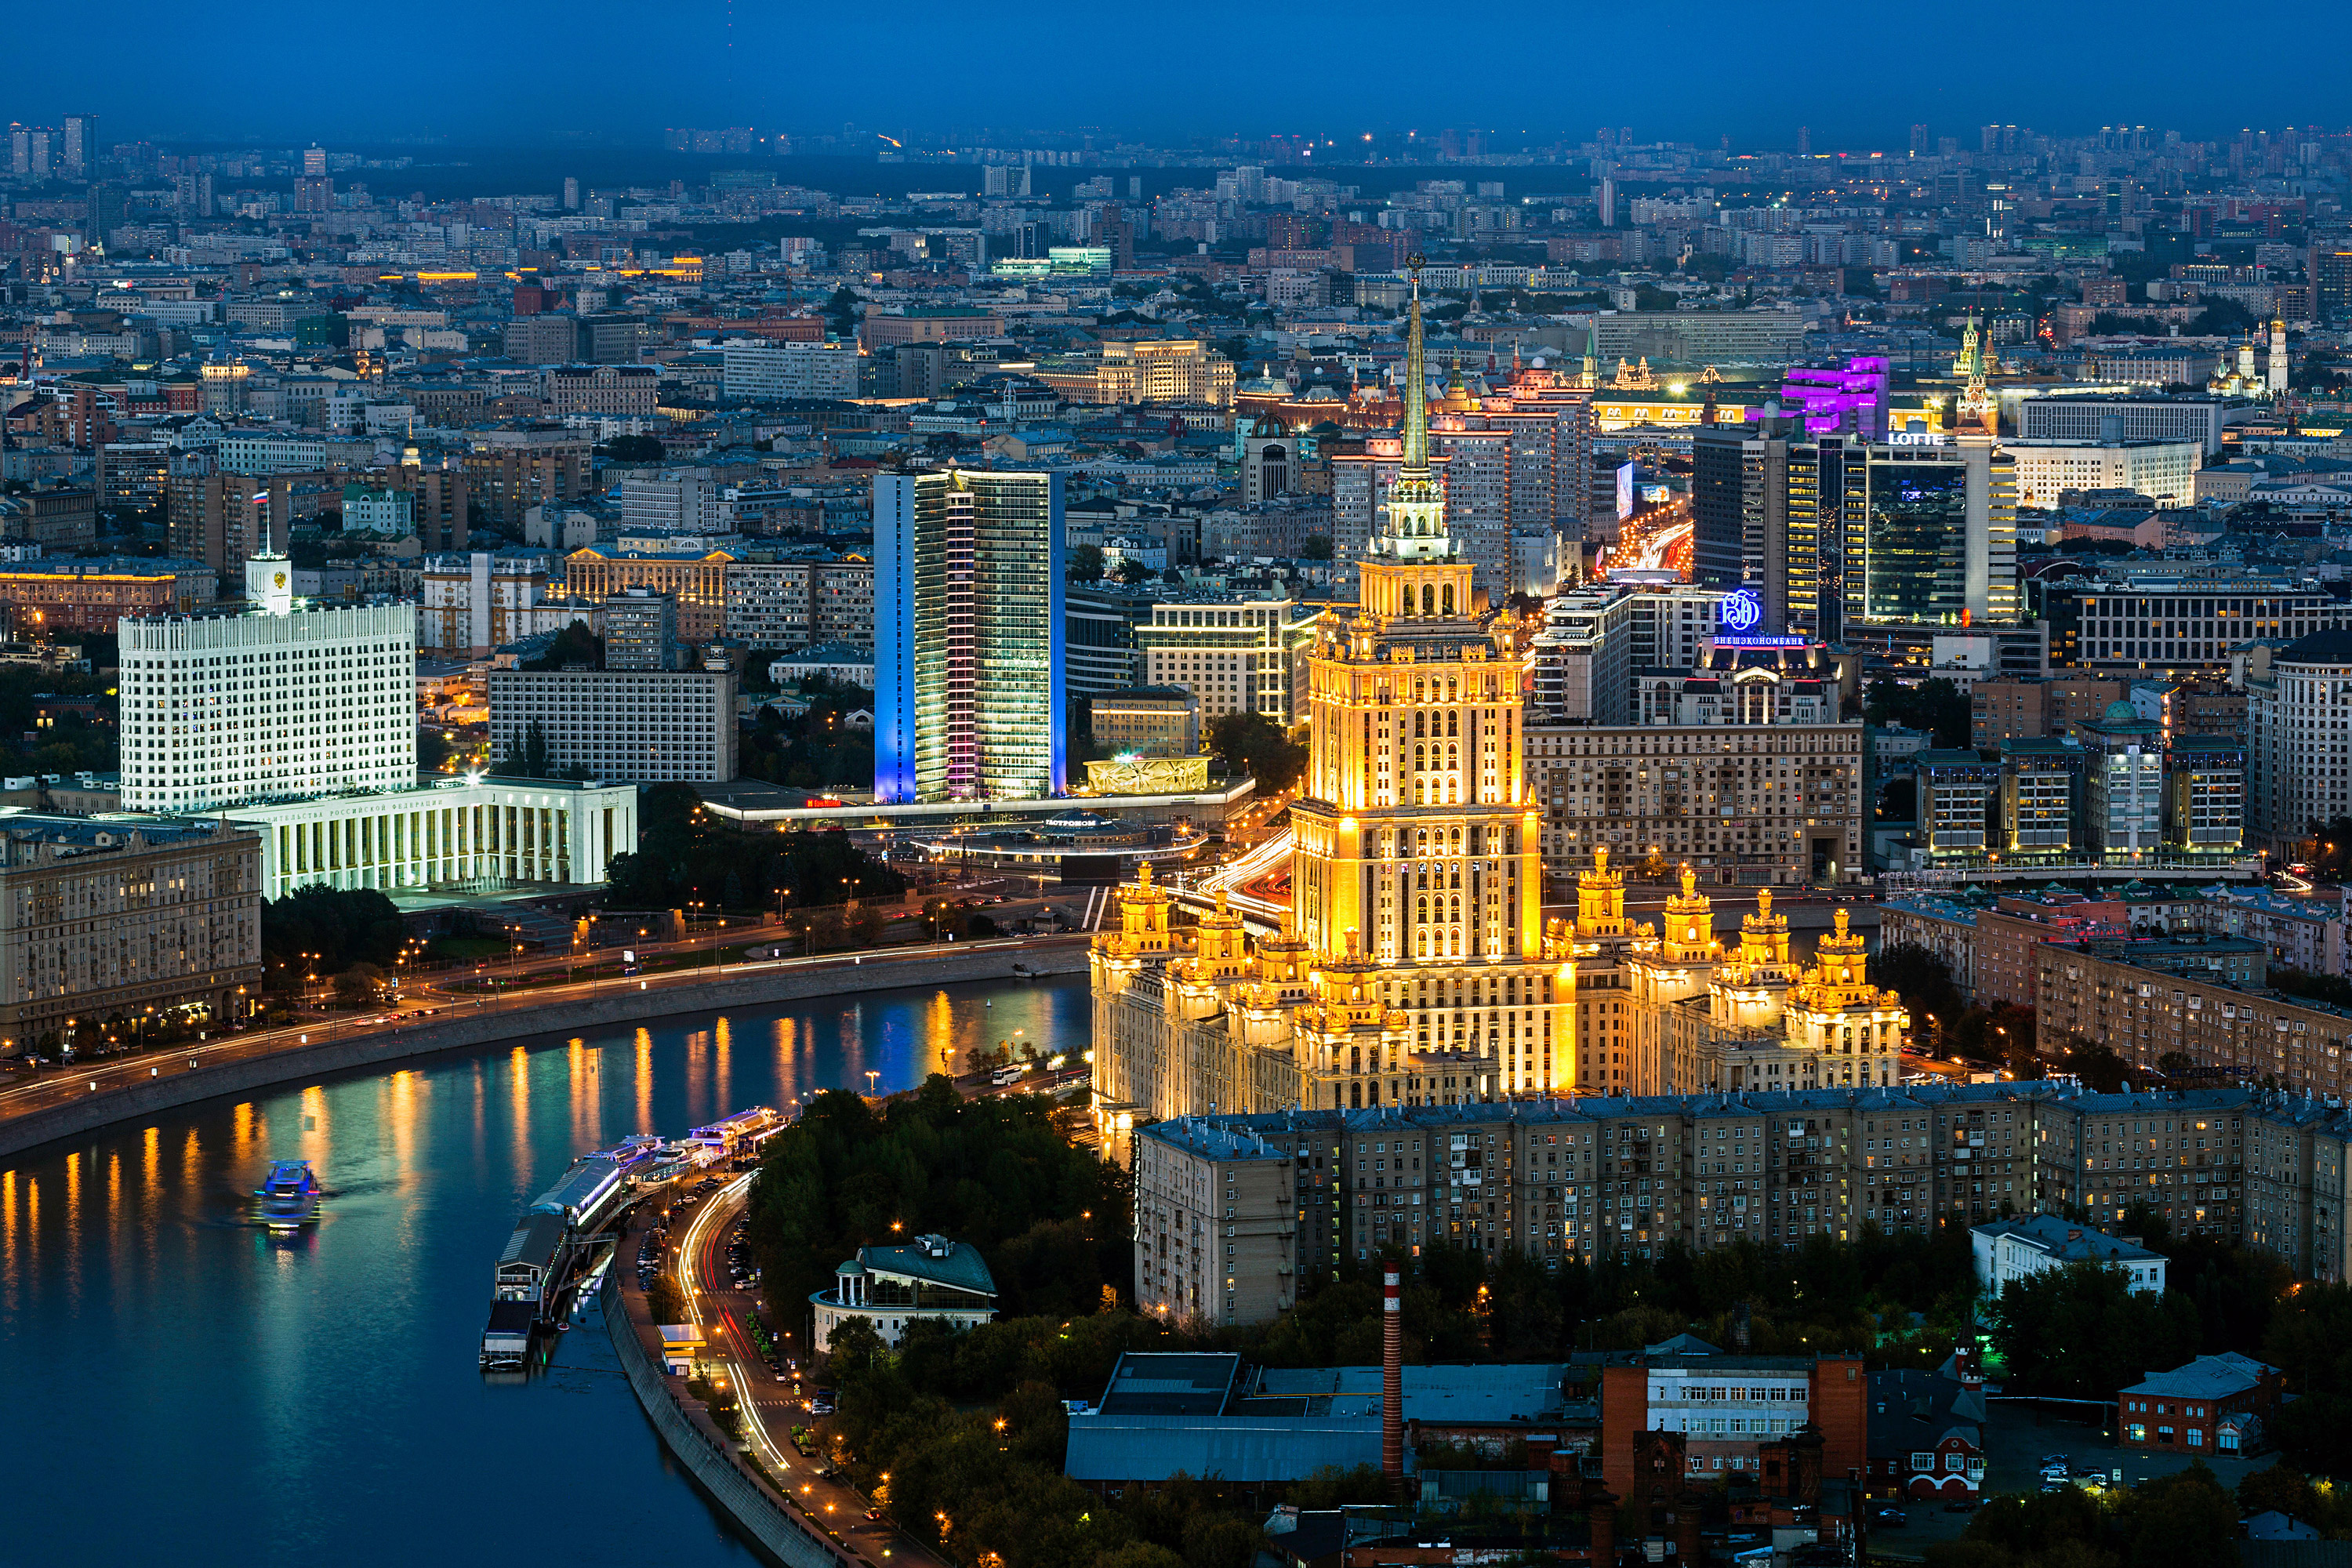 Hotéis de alto padrão estão tirando benefício da queda do rublo